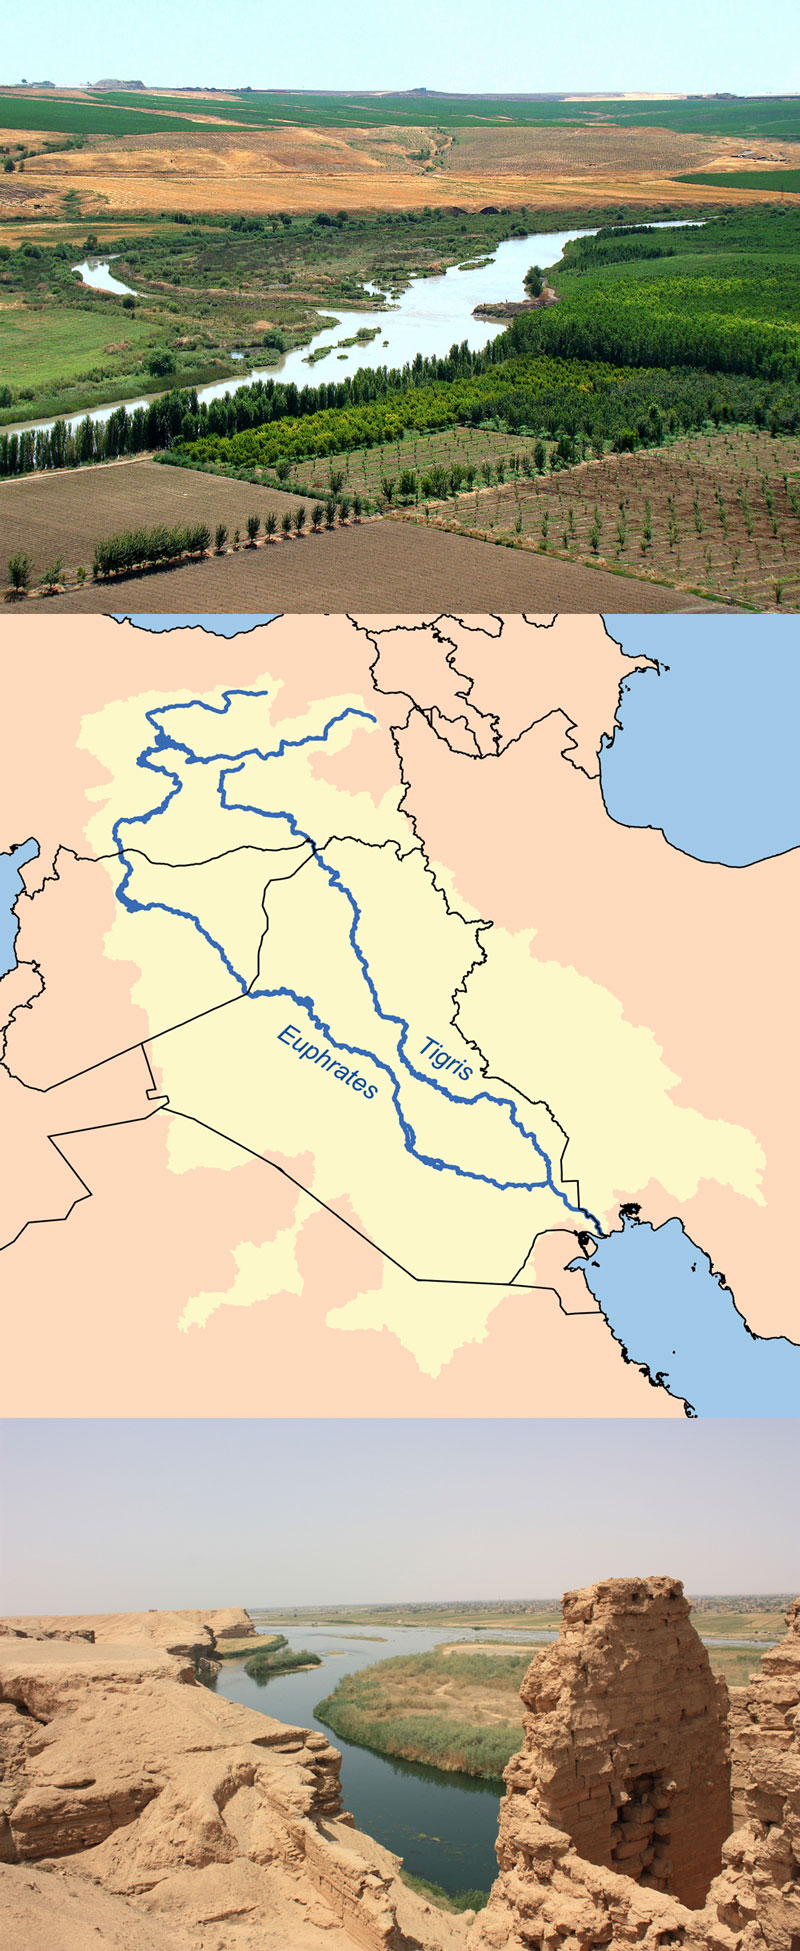 Fakta: Tigris och Eufrat är två floder i Irak